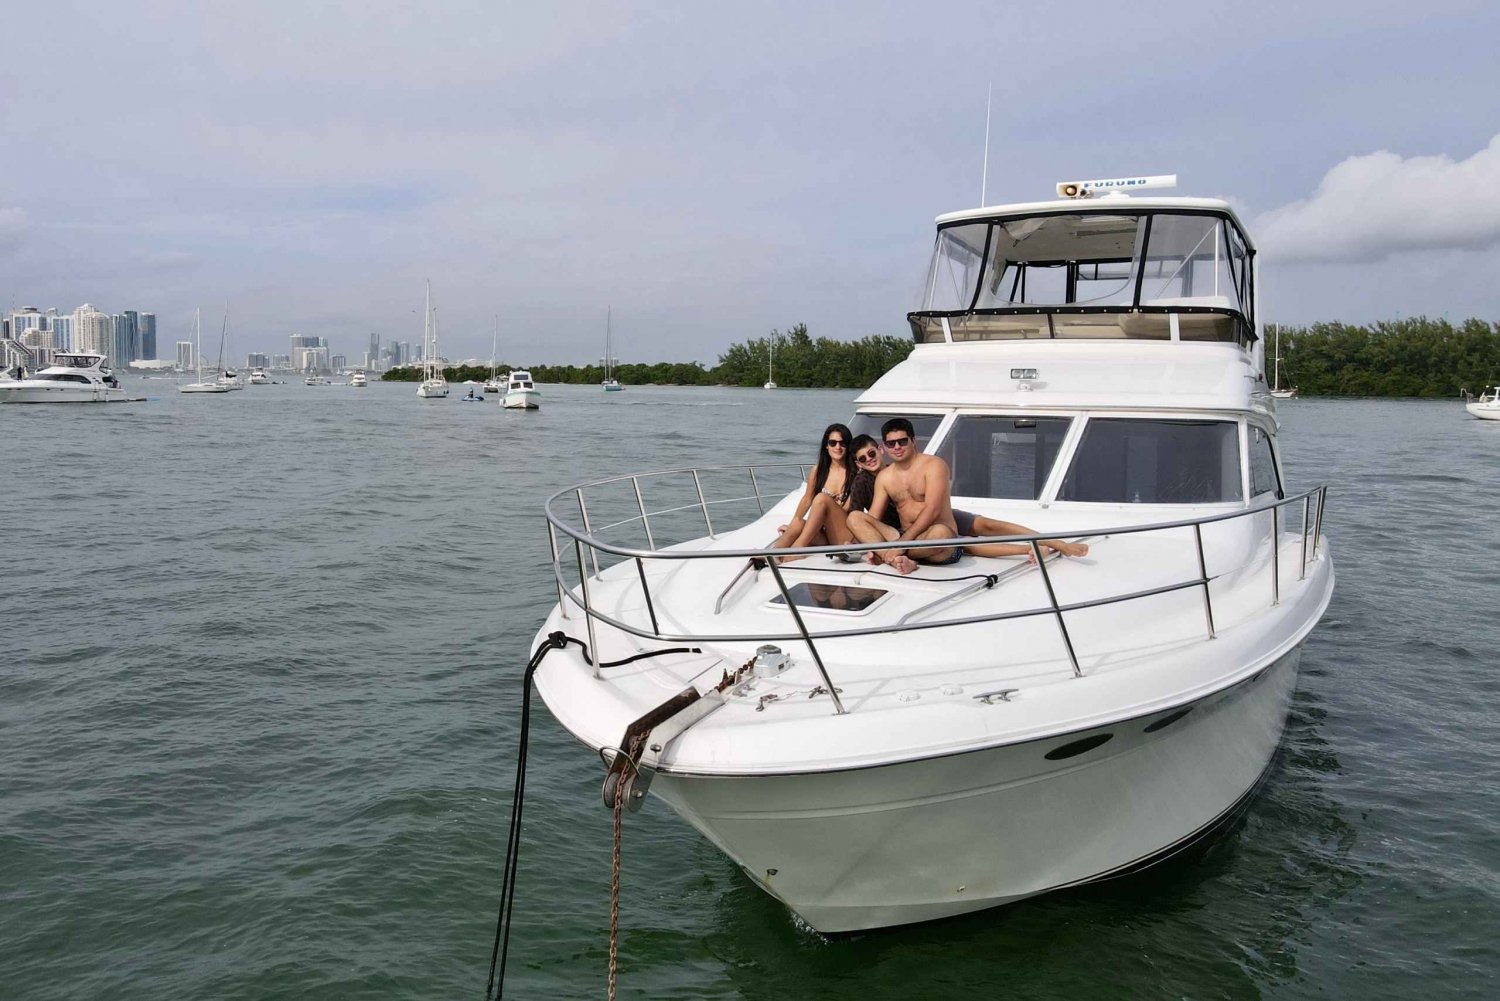 Miami: Yksityinen 52ft ylellinen huviveneen vuokraus kapteenin kanssa